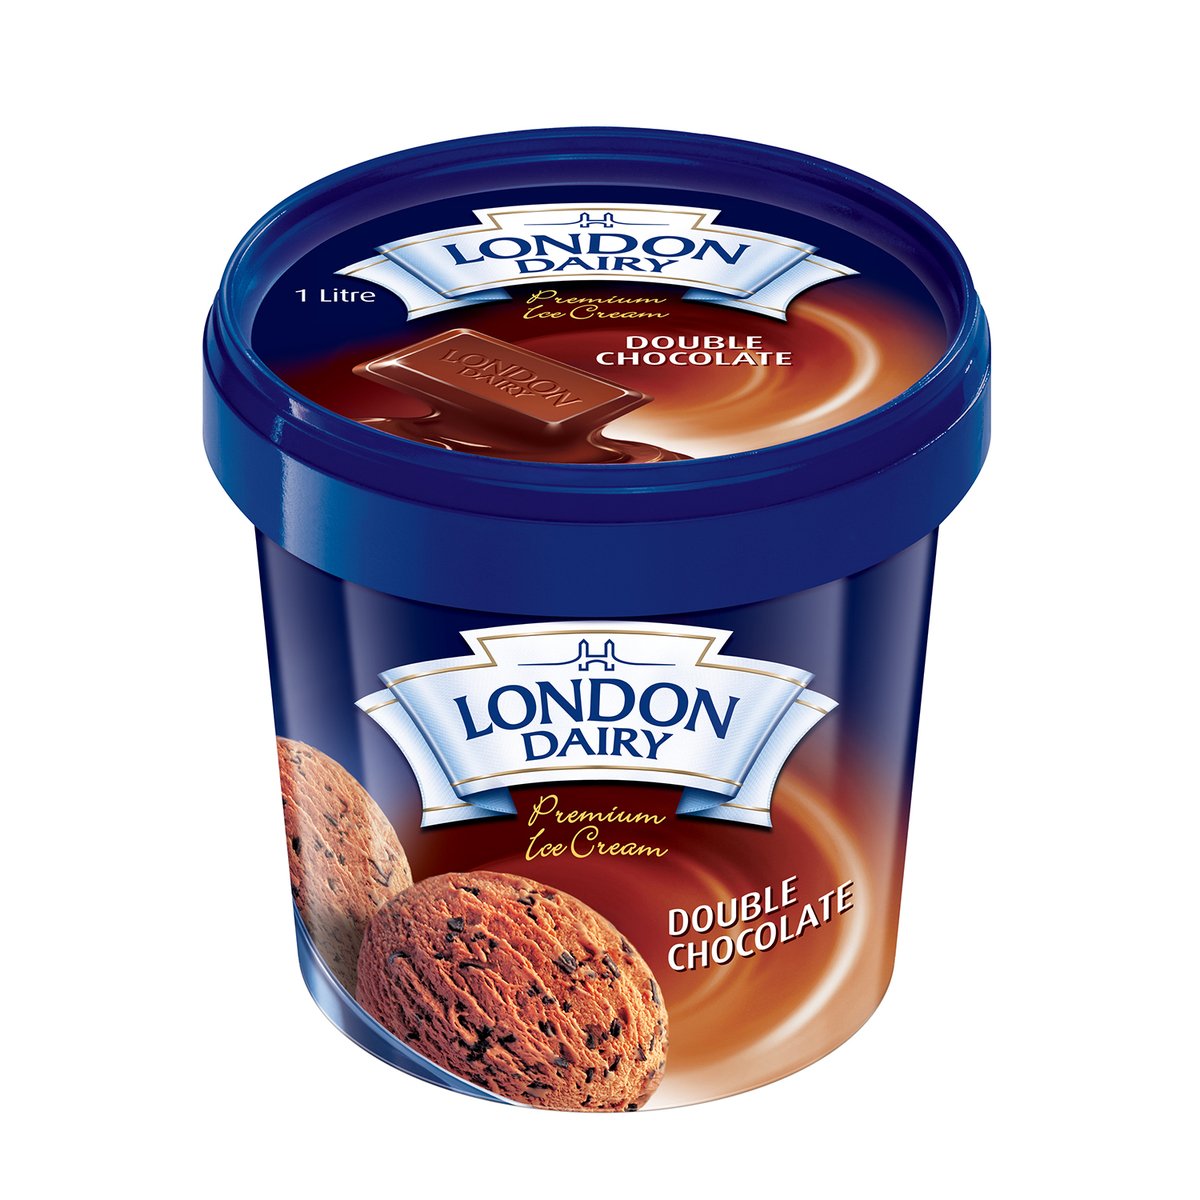 اشتري قم بشراء لندن ديري ايس كريم شوكولاتة 1 لتر Online at Best Price من الموقع - من لولو هايبر ماركت Ice Cream Take Home في السعودية